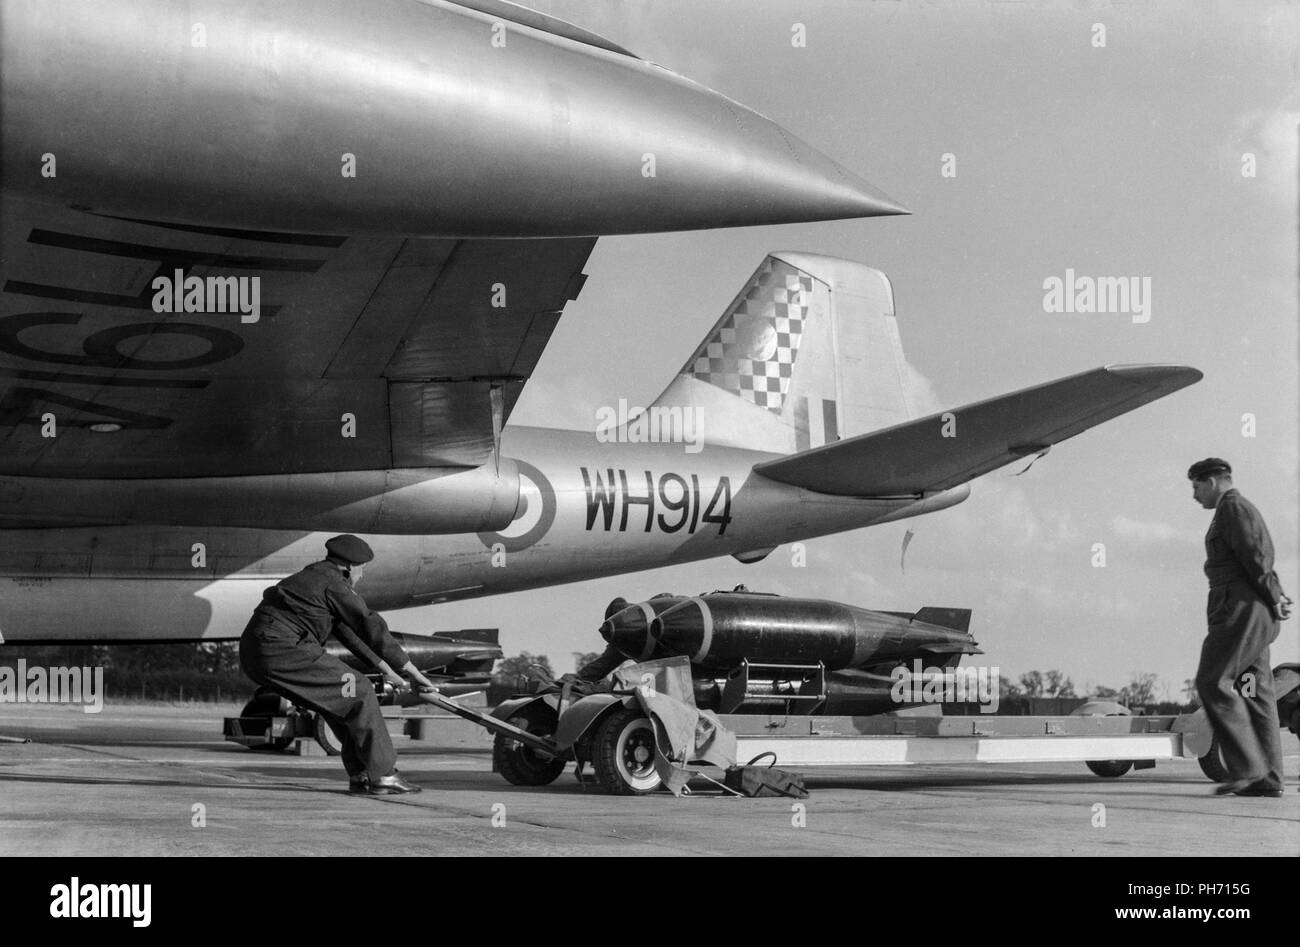 Un English Electric Canberra B2 bomber, WH914, à RAF Wittering en 1955. D'être chargé avec des bombes. Cet avion appartenait à l'escadron 100 à l'époque. Banque D'Images